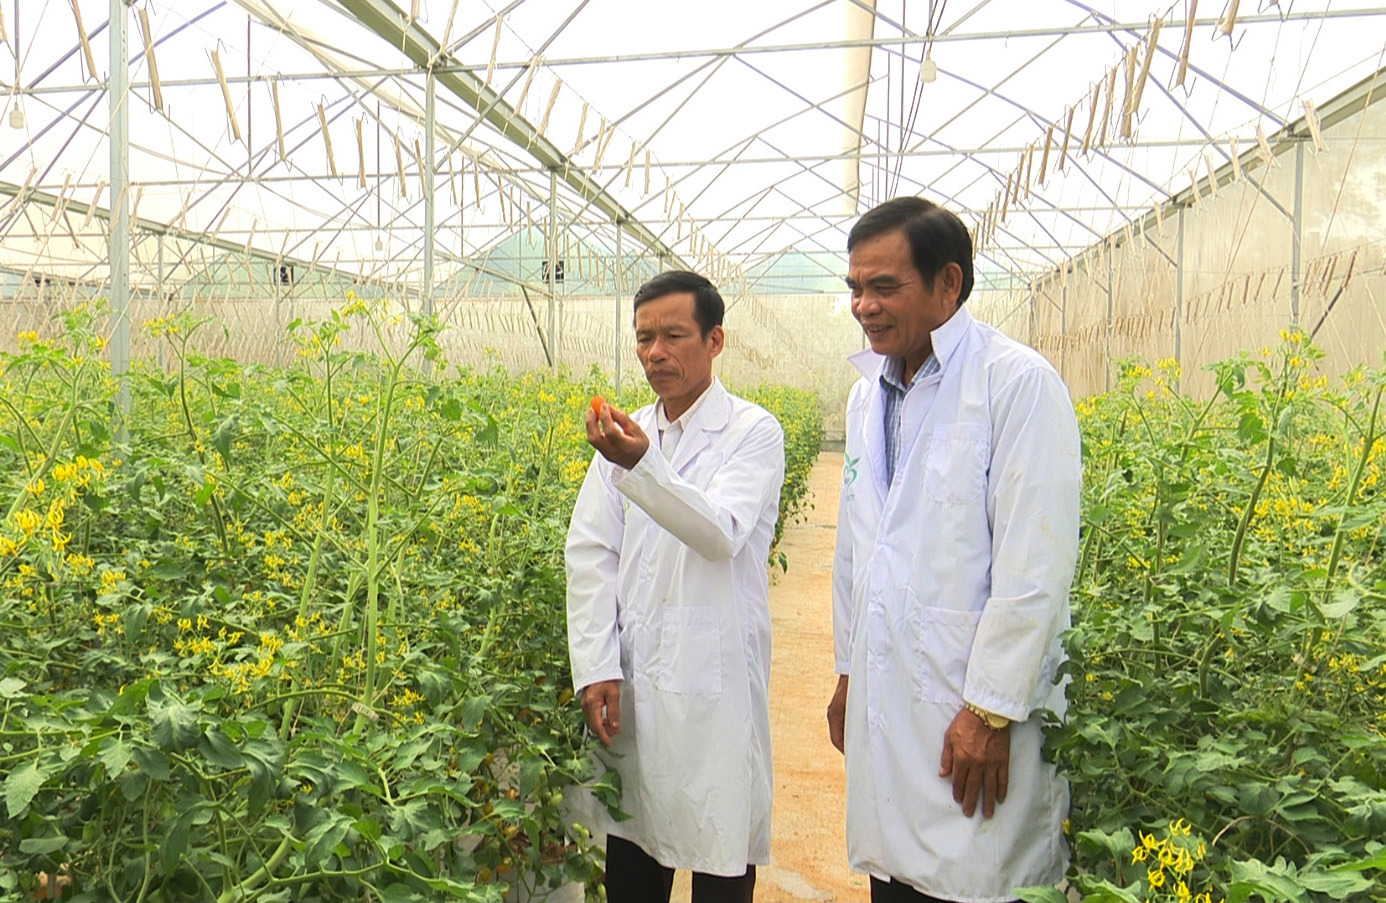 Mô hình trồng cà chua Nova trong nhà kính của cựu chiến binh Trịnh Văn Mẫn. Ảnh: Thế Hùng